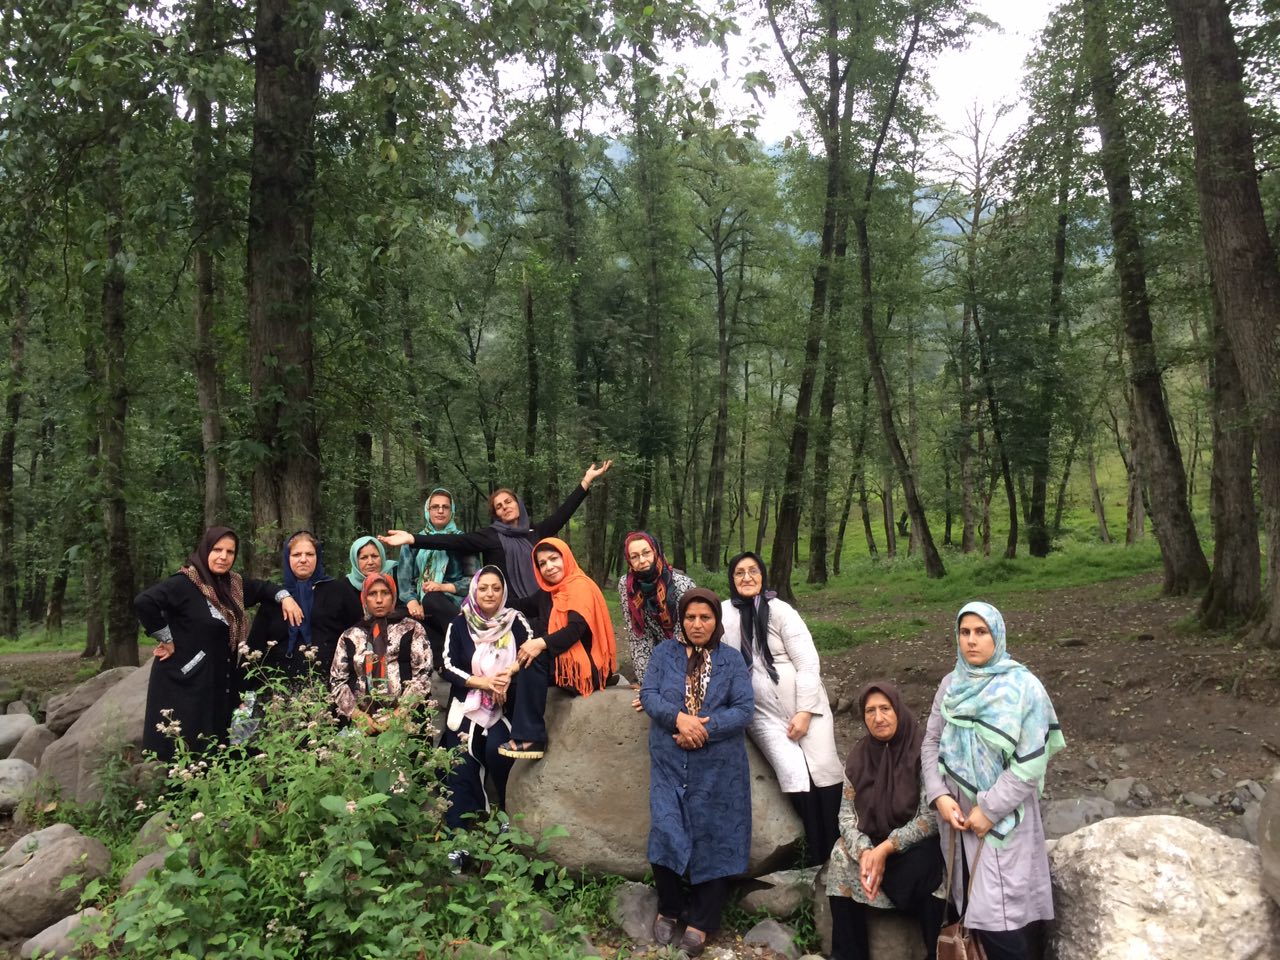  سفر طبیعت درمانی به جنگل های مازندران منطقه لفور تابستان 1393